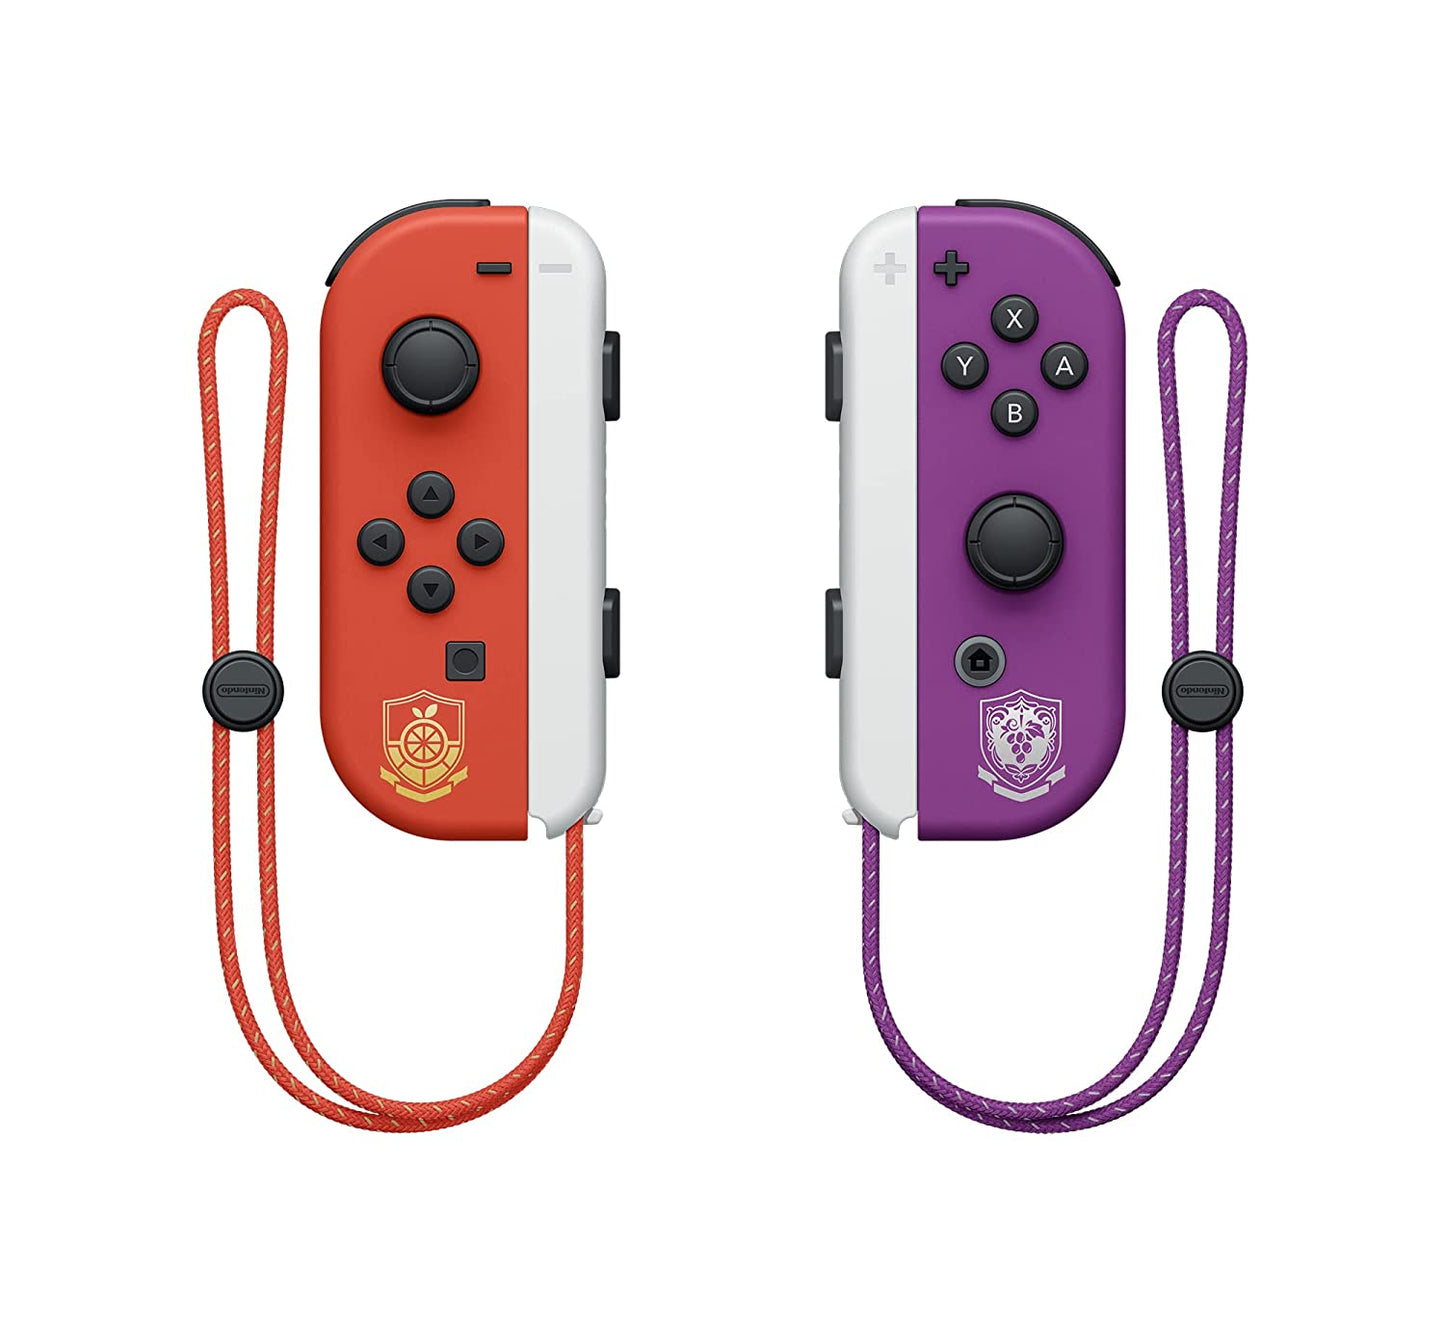 Switch™ – OLED Model: Pokémon™ Scarlet & Violet Edition